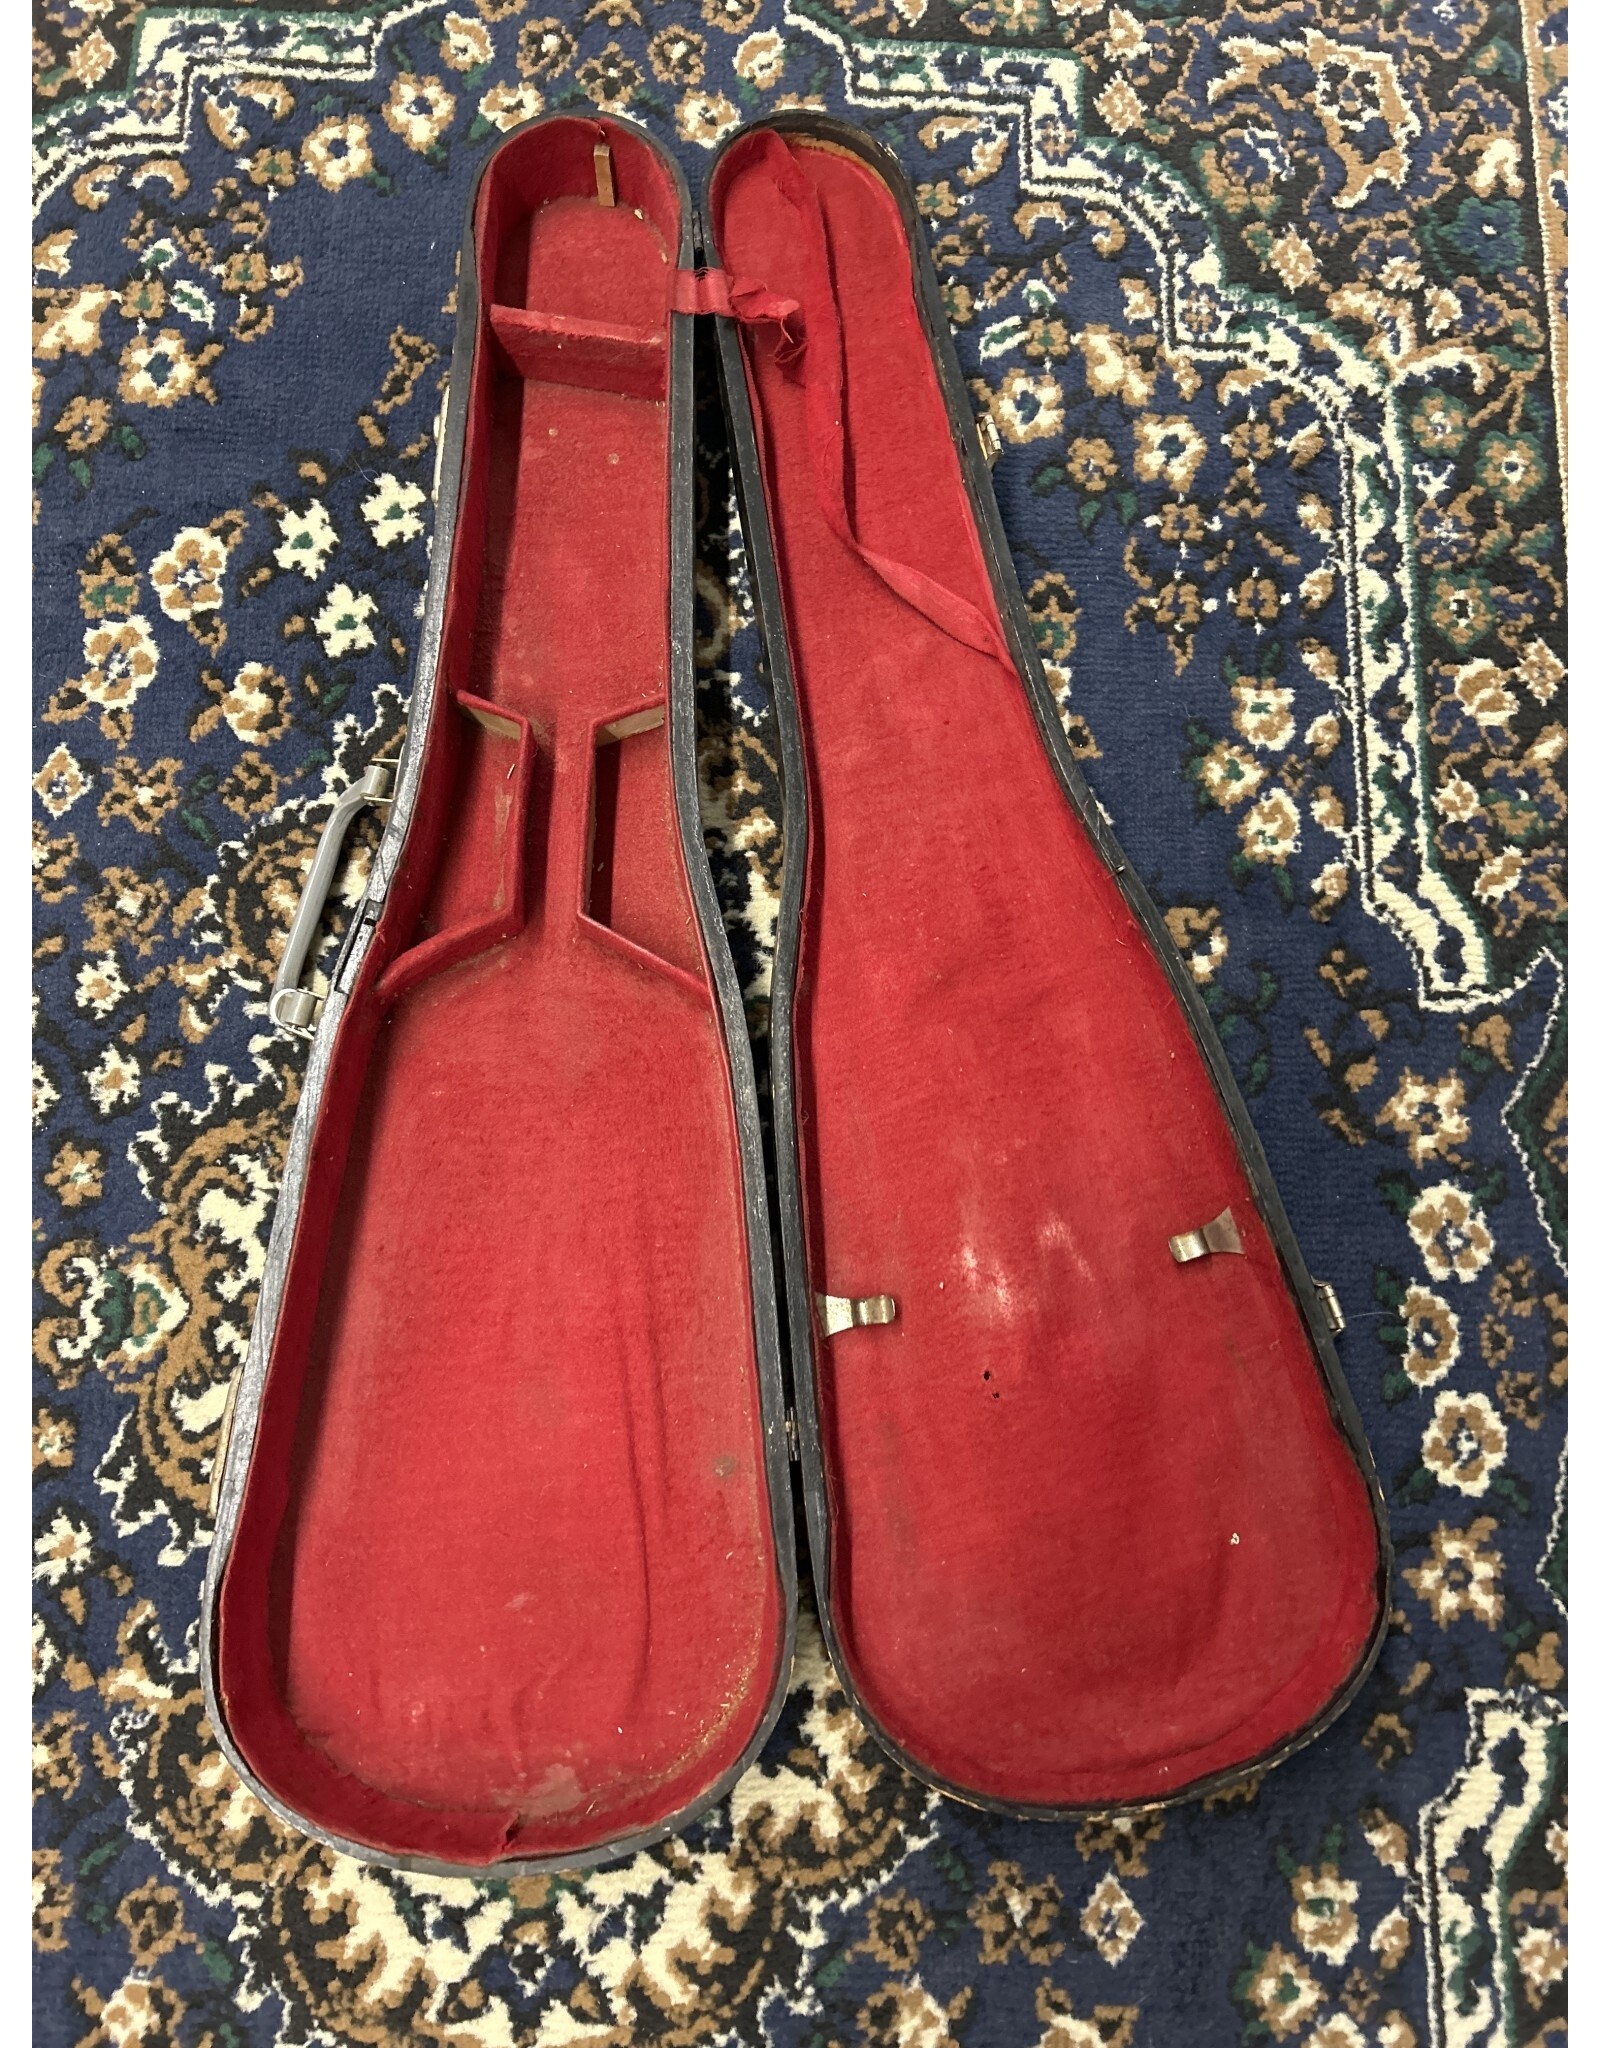 None Violin Case (Used)